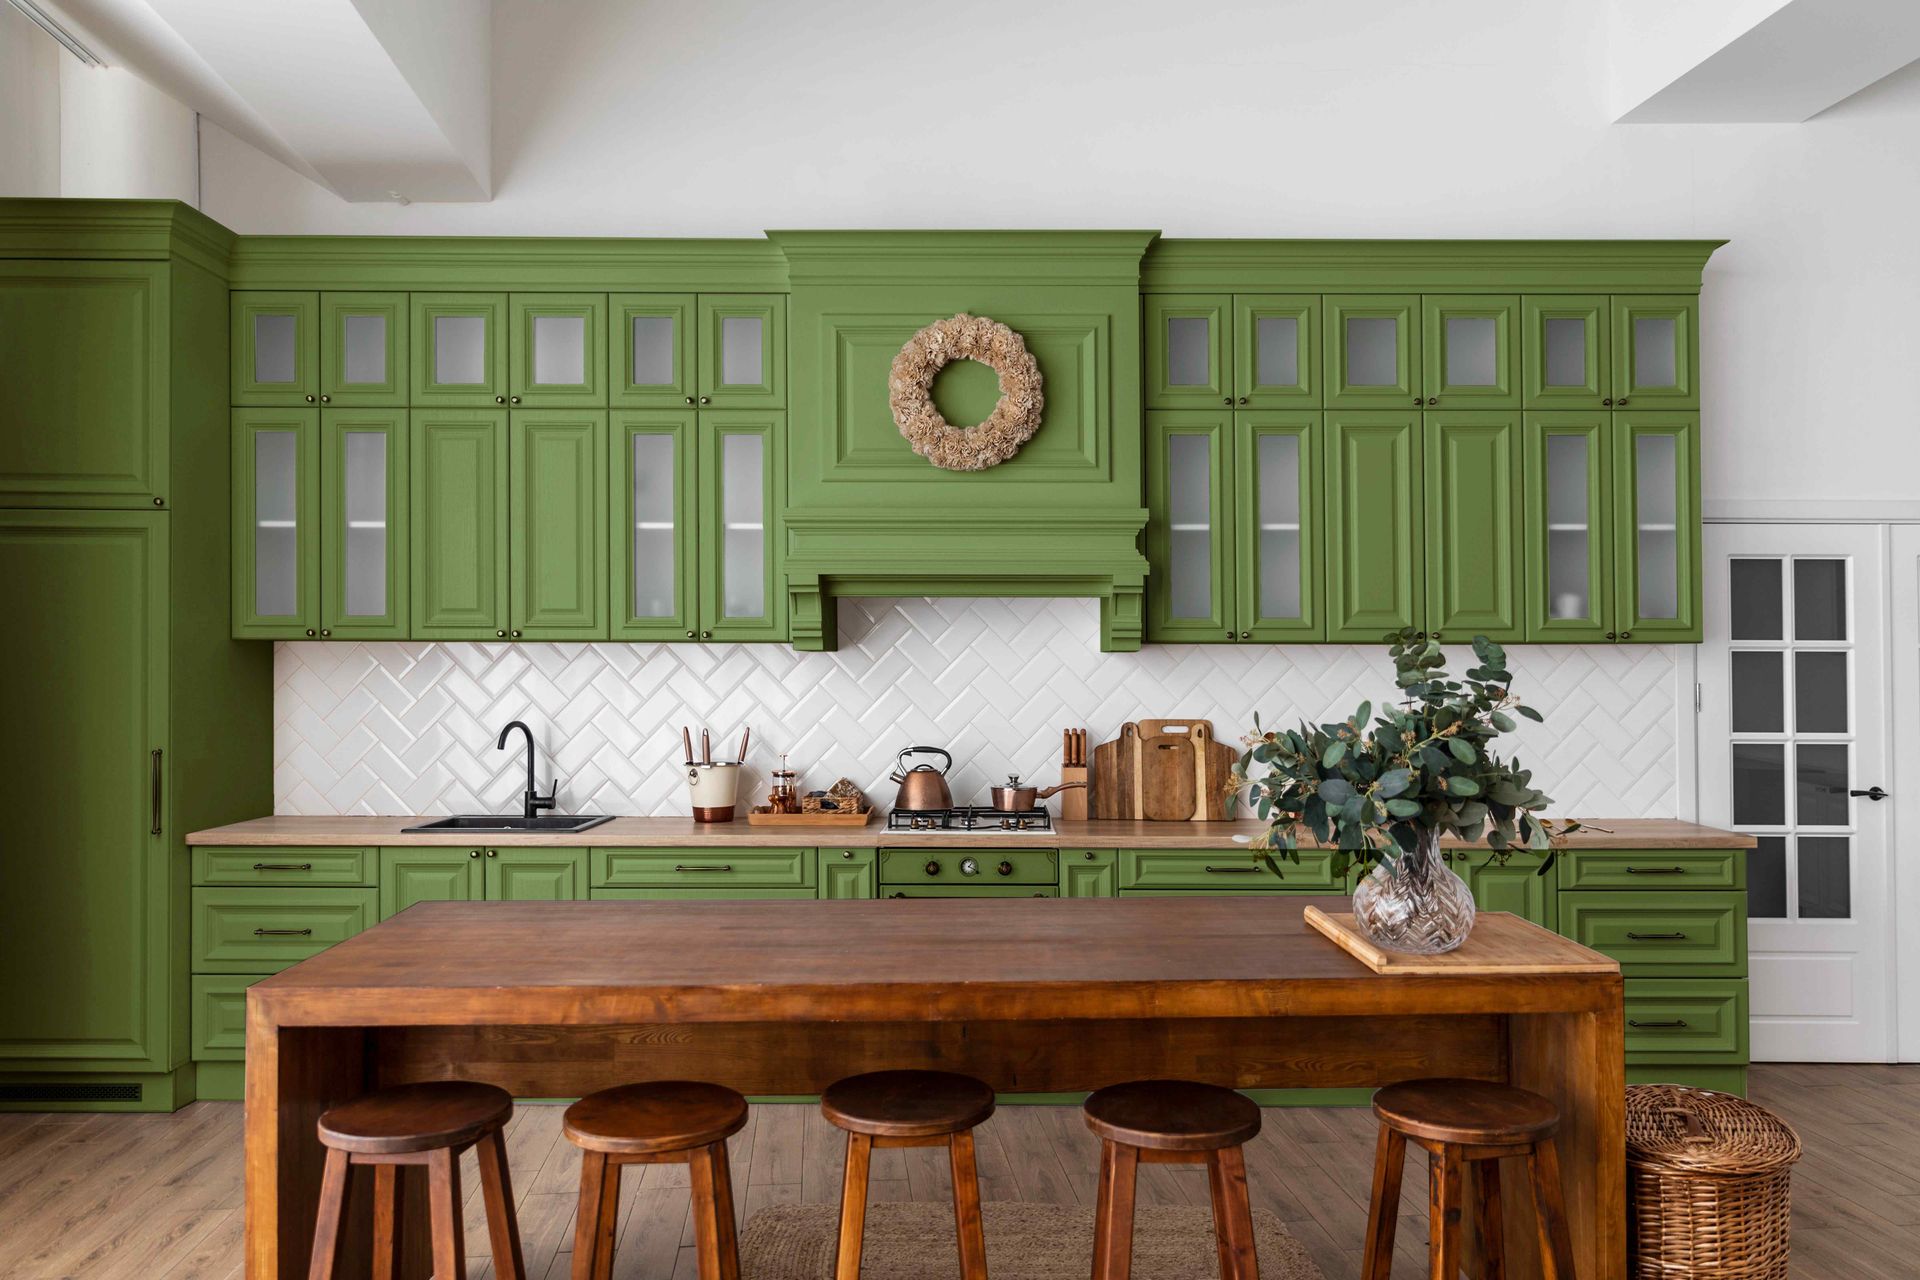 Beautiful green kitchen cabinets